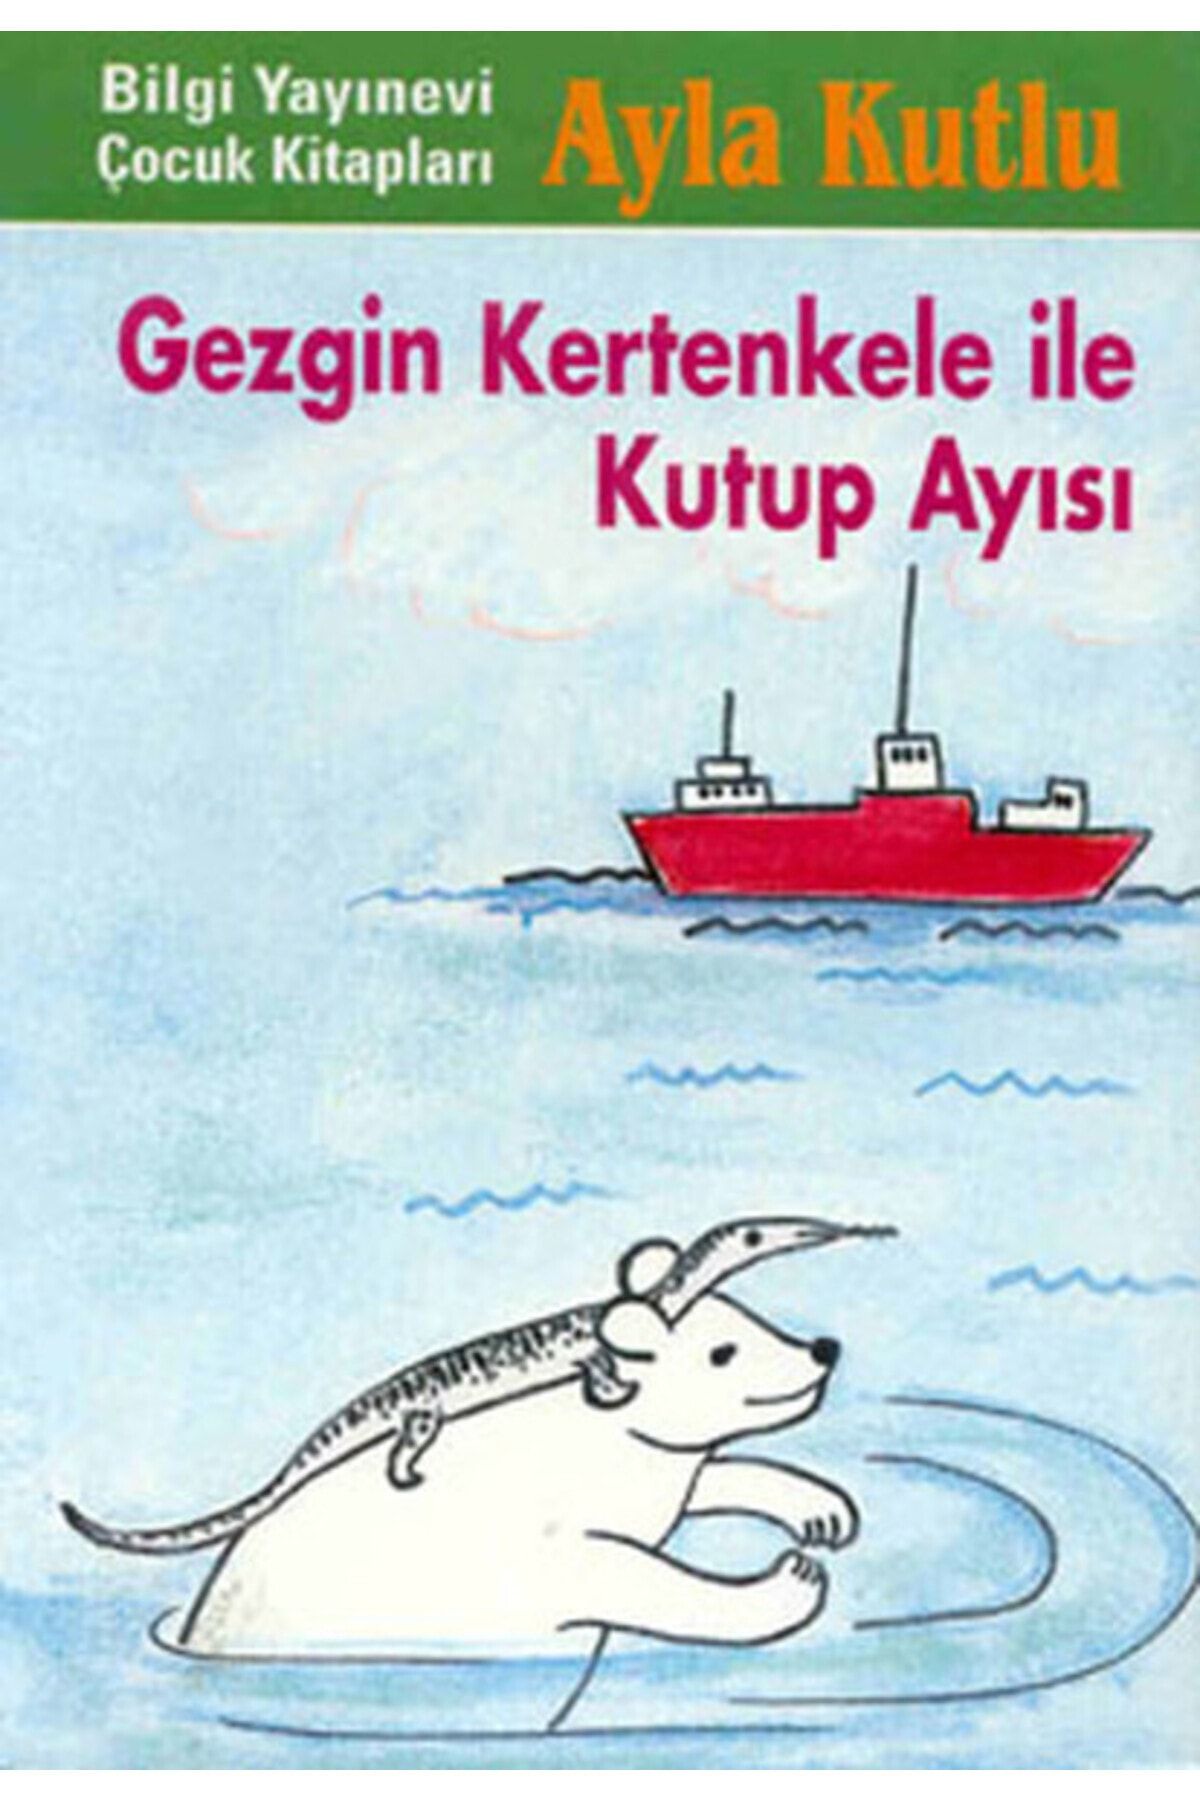 Bilgi Yayınları Gezgin Kertenkele ile Kutup Ayısı 2. Kitap